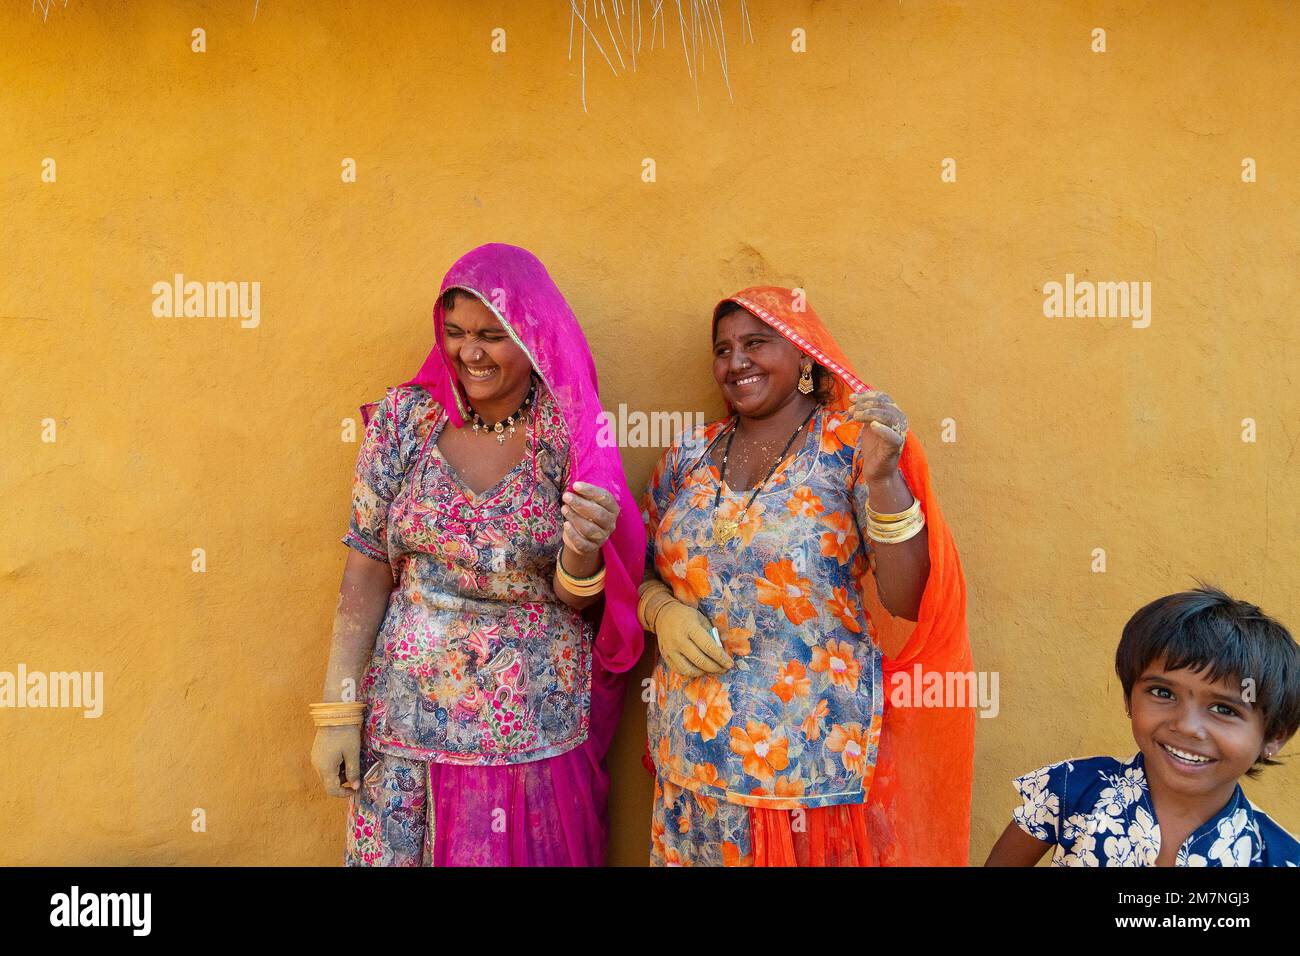 Jaisalmer, Rajasthan, Indien - 15. Oktober 2019 : lächelnde und glückliche Rajasthani-Frauen und -Kinder in lokalen Kostümen, die in einem Rajasthani-Dorf posieren. Stockfoto